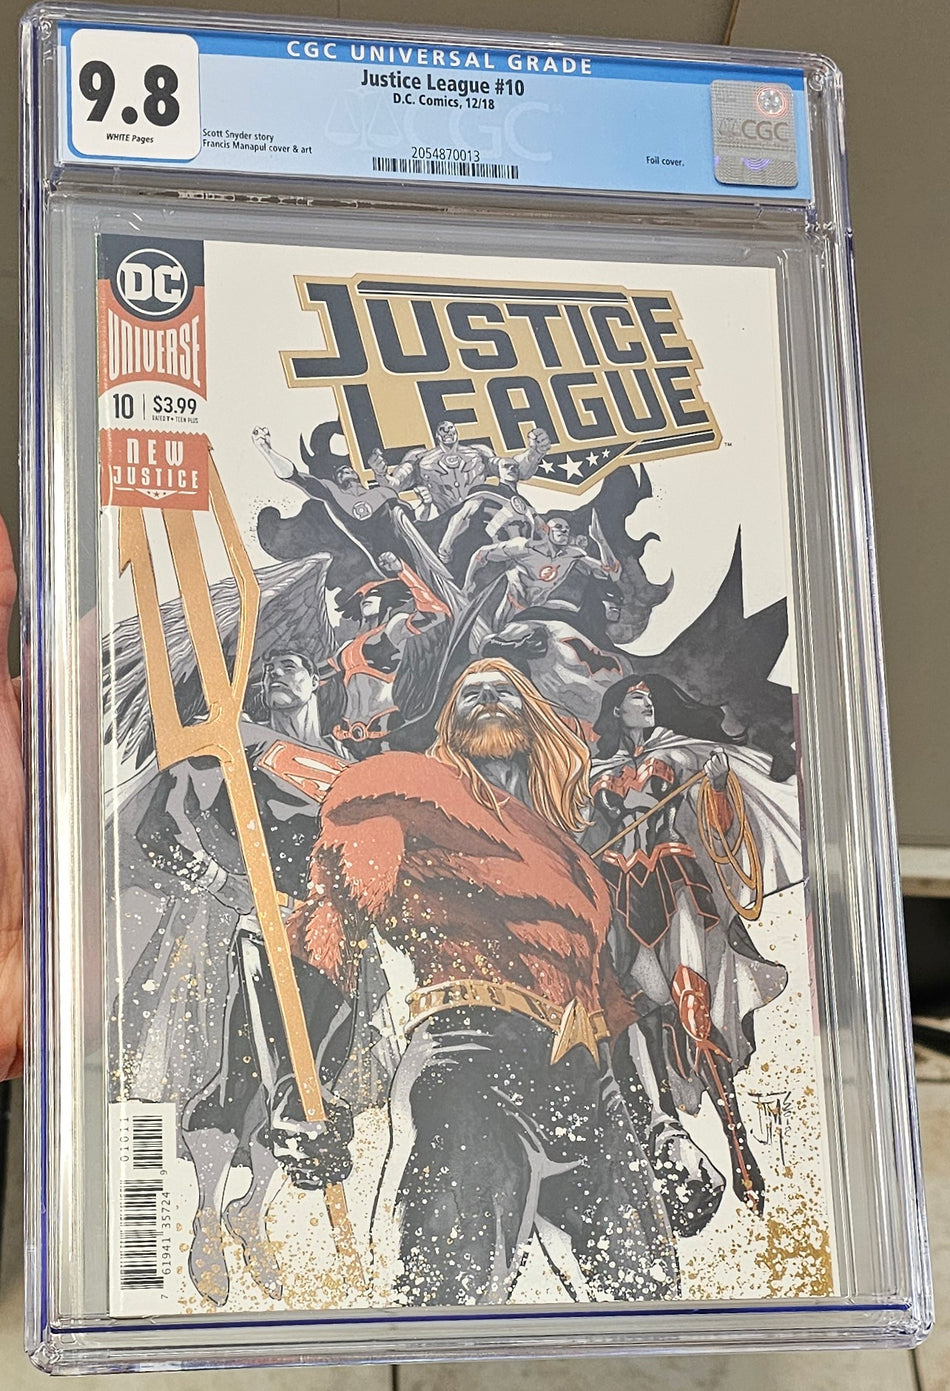 Justice League #10 CGC 9.8 Foil Cover